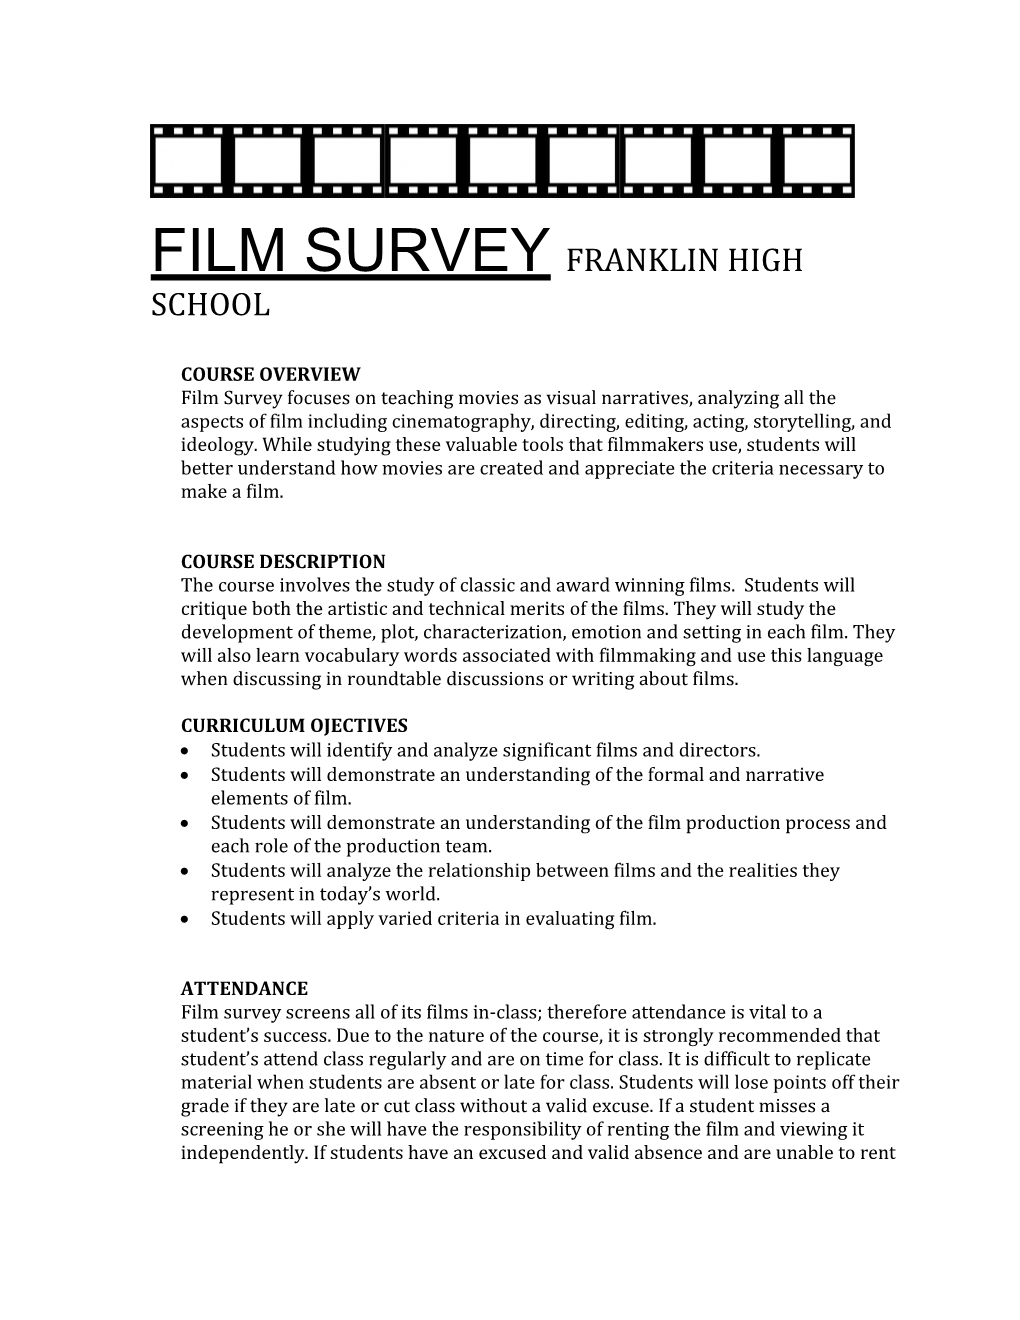 Film Survey Franklin High School